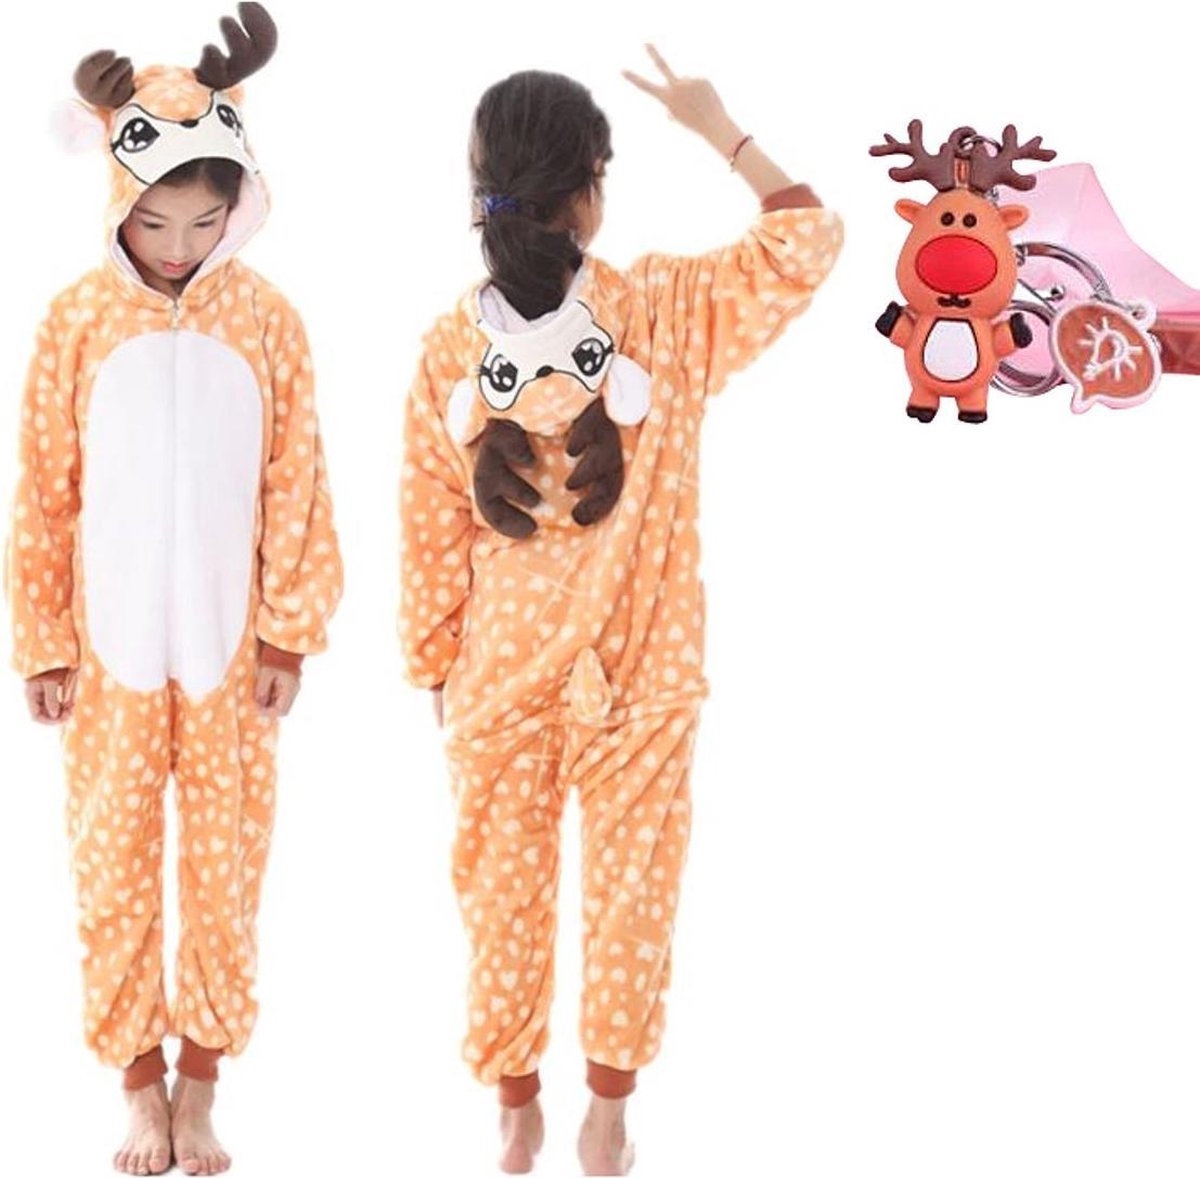 Onesie rendier- hert - eland dieren kostuum jumpsuit pyjama kinderen - 140-146 (140) + GRATIS tas/sleutelhanger verkleedkleding